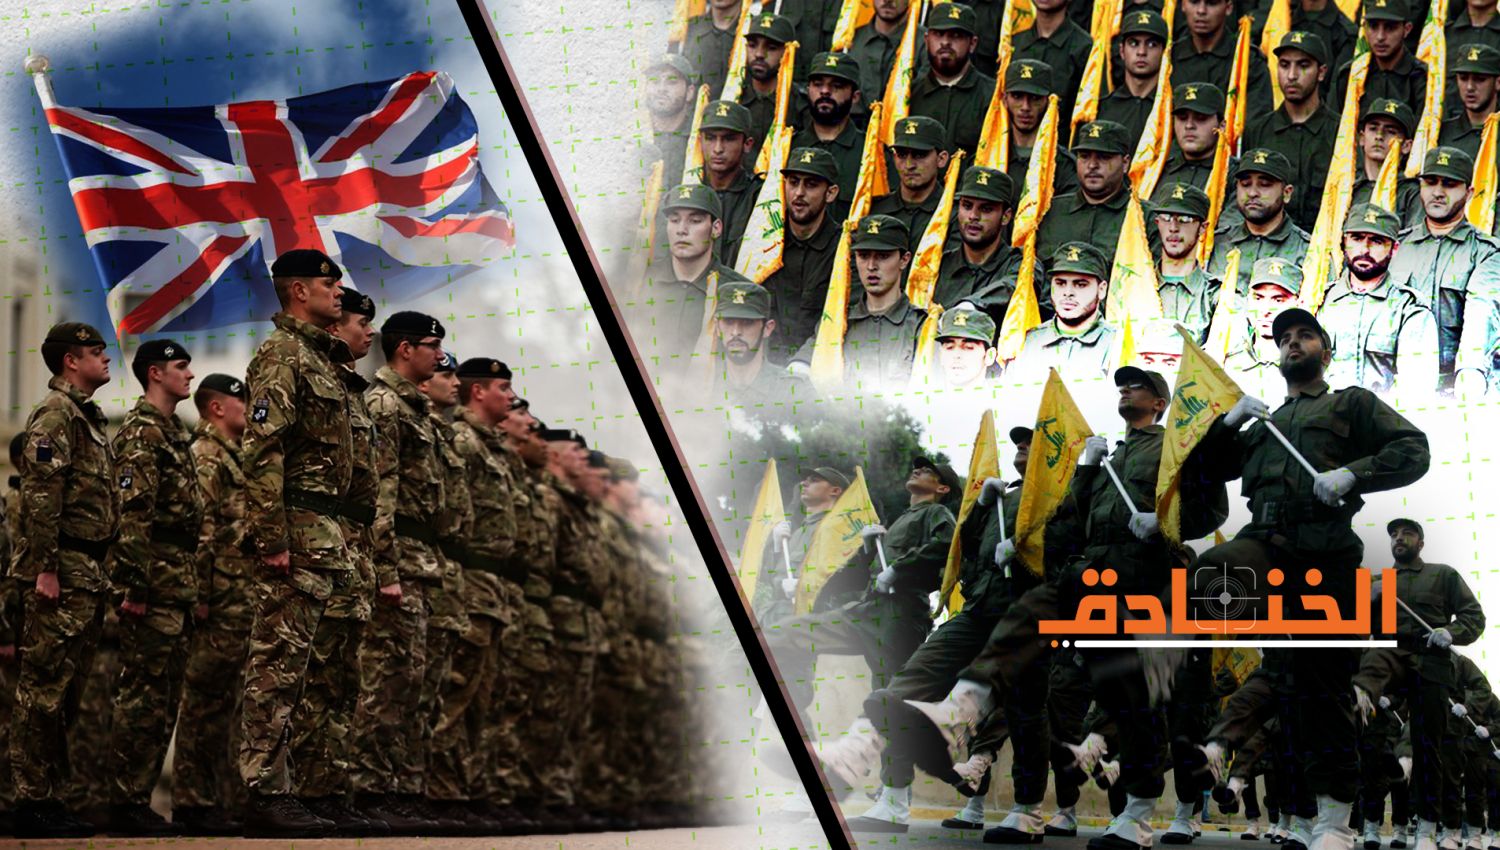  صحيفة "التايمز": حزب الله ينافس الجيش البريطاني في العديد